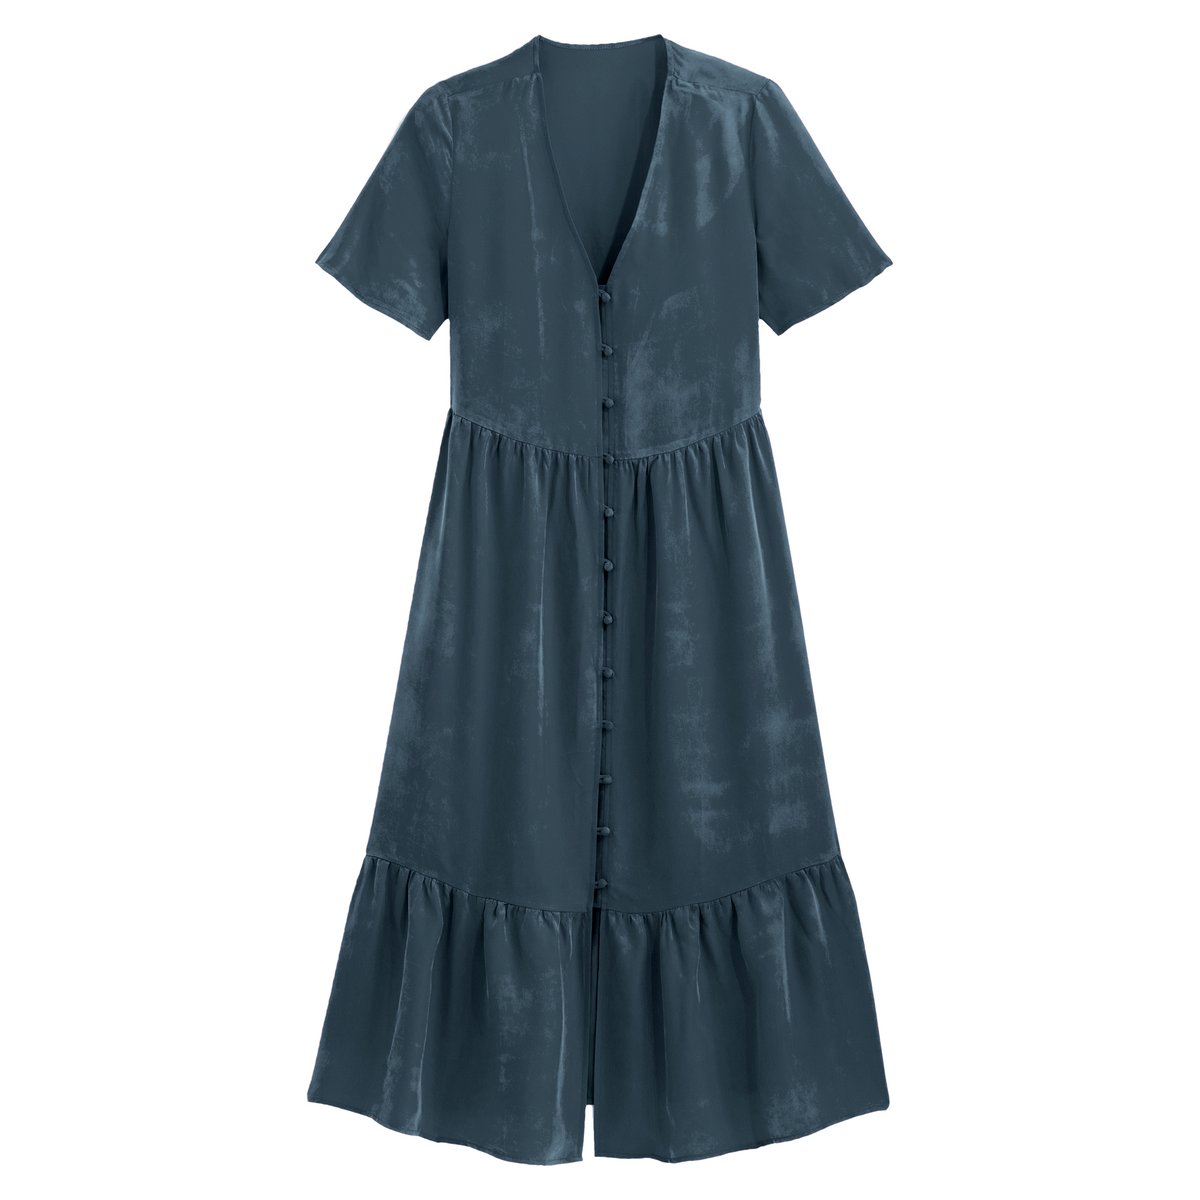 Платье La Redoute С V-образным вырезом с короткими рукавами средней длины 38 (FR) - 44 (RUS) синий, размер 38 (FR) - 44 (RUS) С V-образным вырезом с короткими рукавами средней длины 38 (FR) - 44 (RUS) синий - фото 5